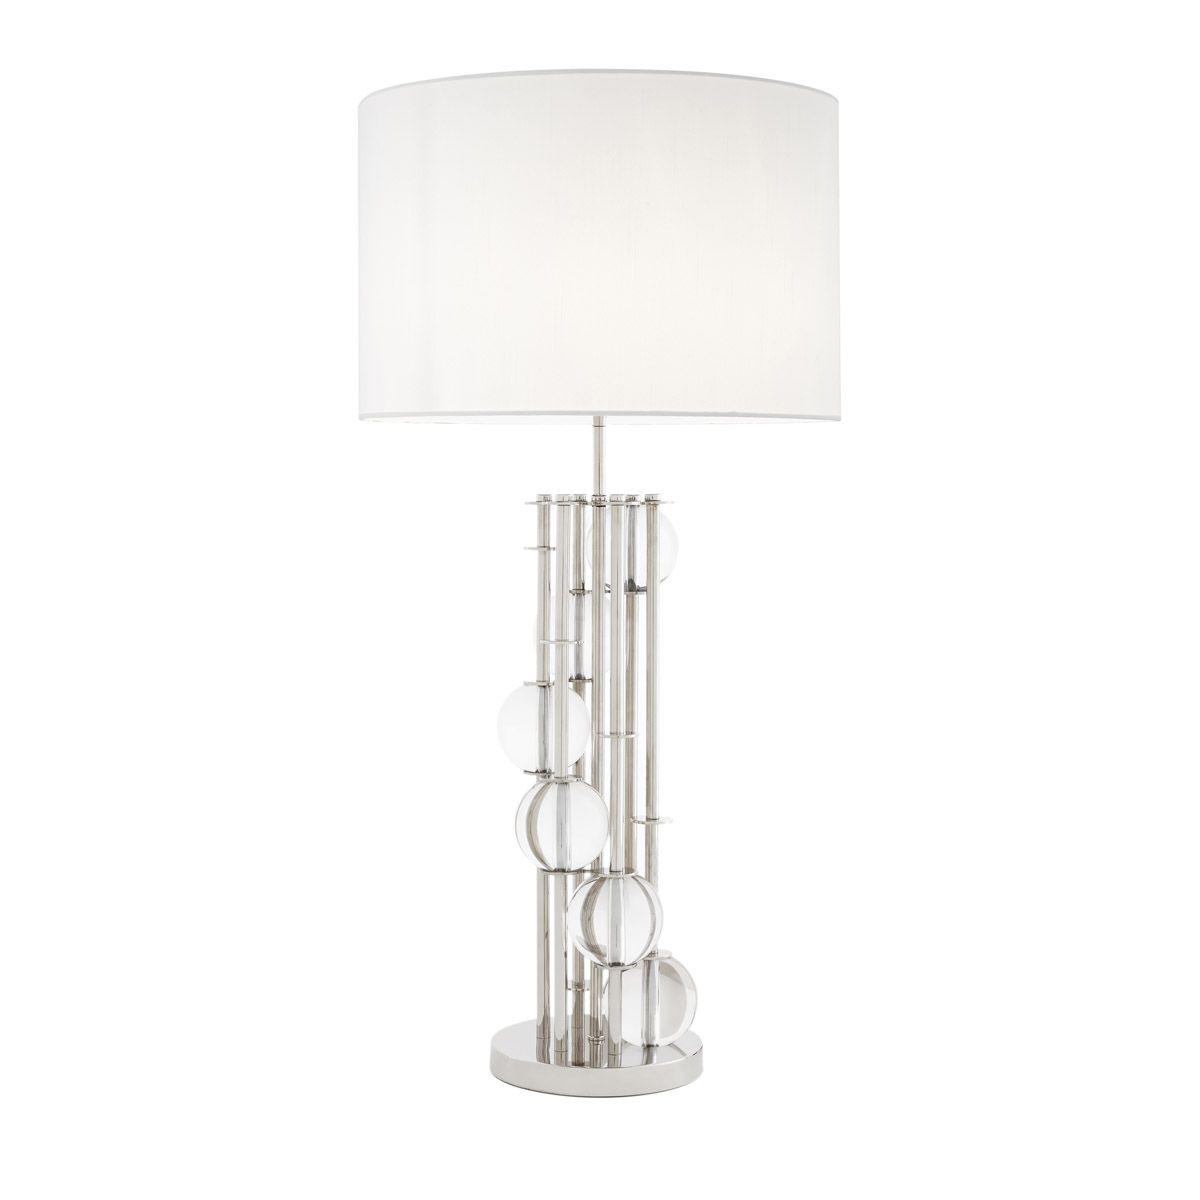 Купить Настольная лампа Table Lamp Lorenzo в интернет-магазине roooms.ru